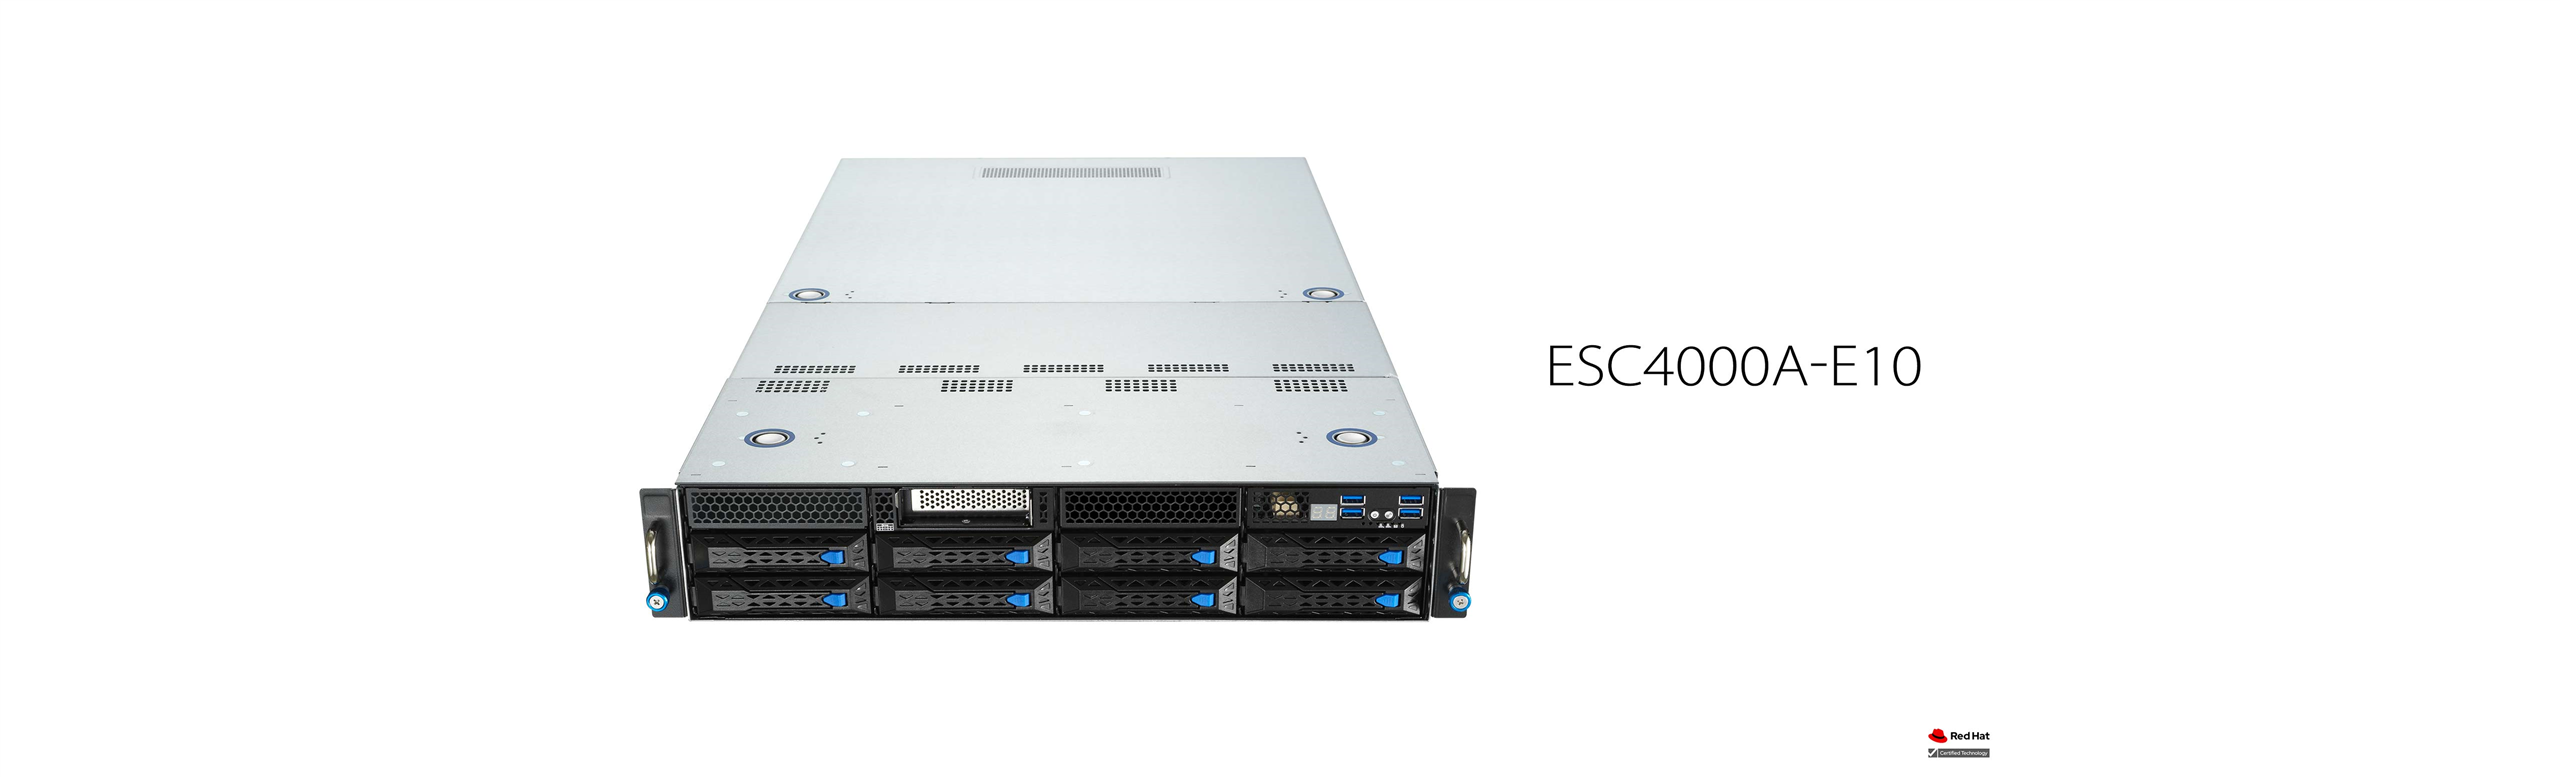 ASUS ESC4000A-E10 serveur compatible redhat